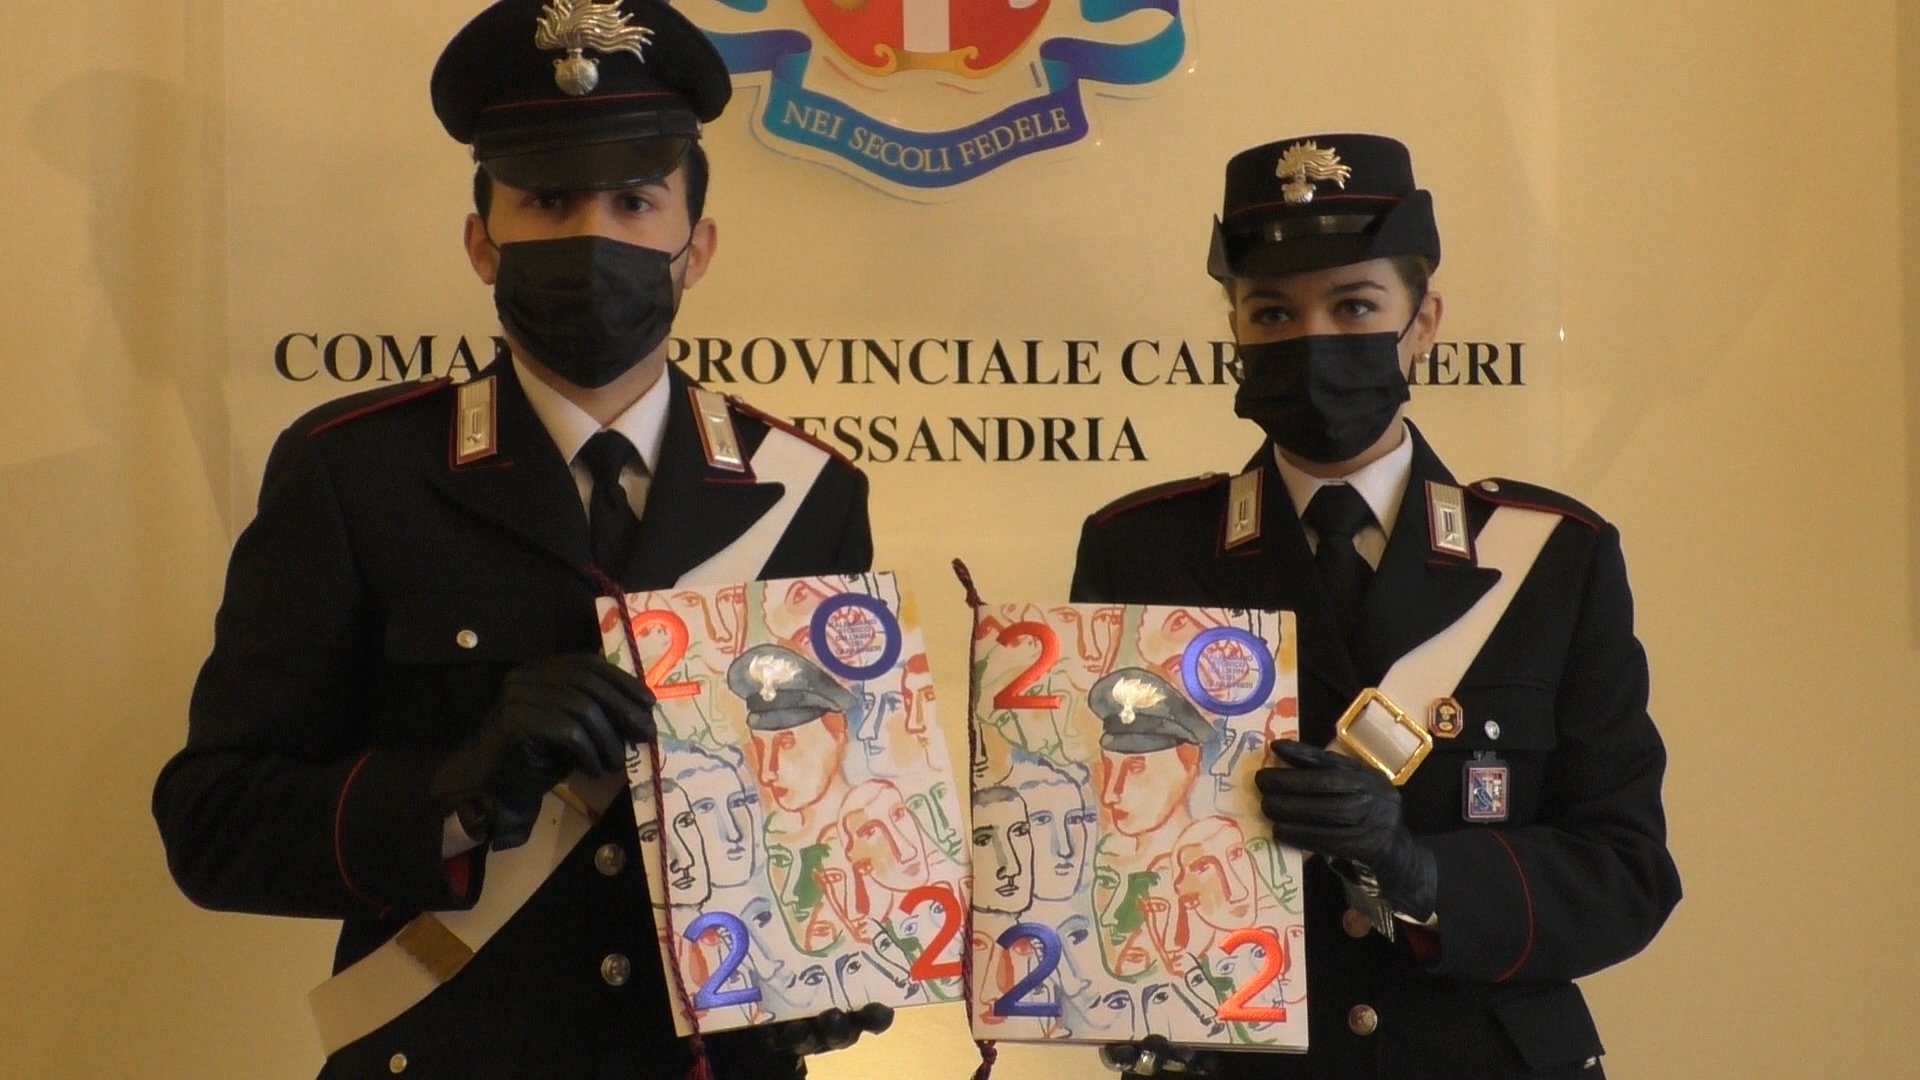 Ecco il Calendario Storico dell’Arma dei Carabinieri 2022: “Da sempre vicini ai cittadini”